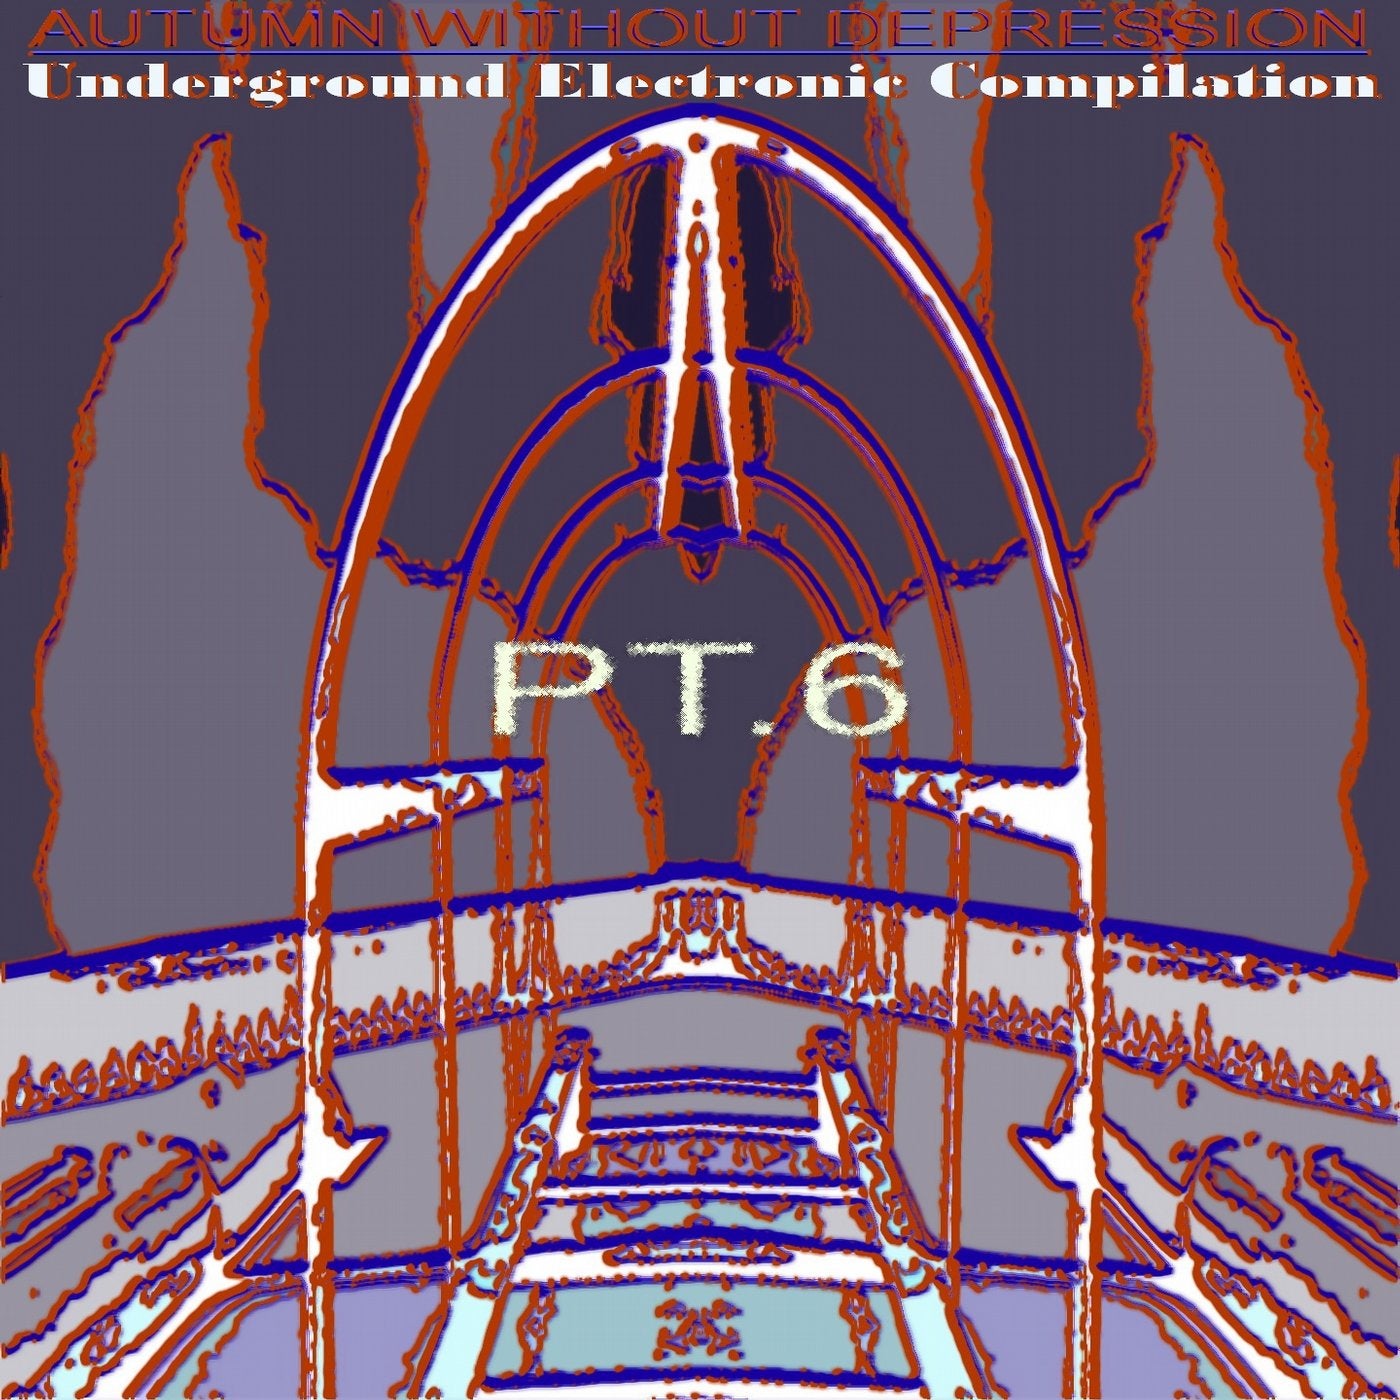 Autumn Without Depression.Underground Electronic Compilation., Pt. 6